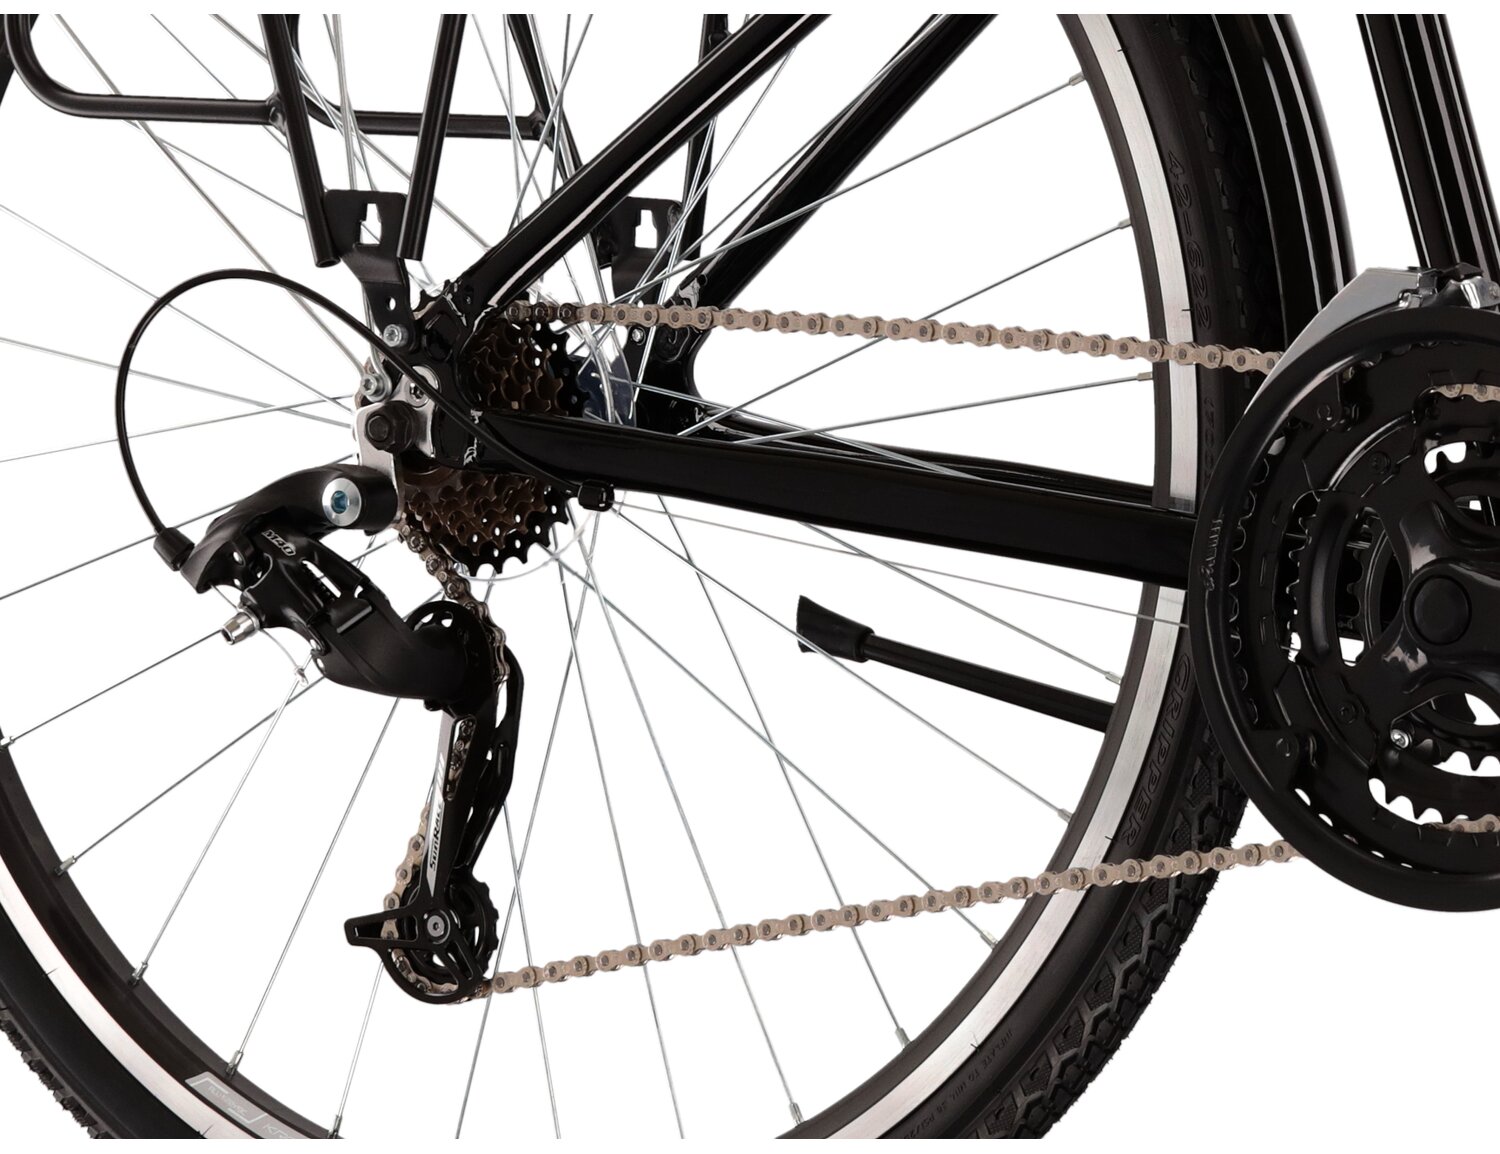  Tylna siedmiobiegowa przerzutka Sunrace RDM41 oraz hamulce v-brake w rowerze trekkingowym KROSS Trans 1.0 SR 